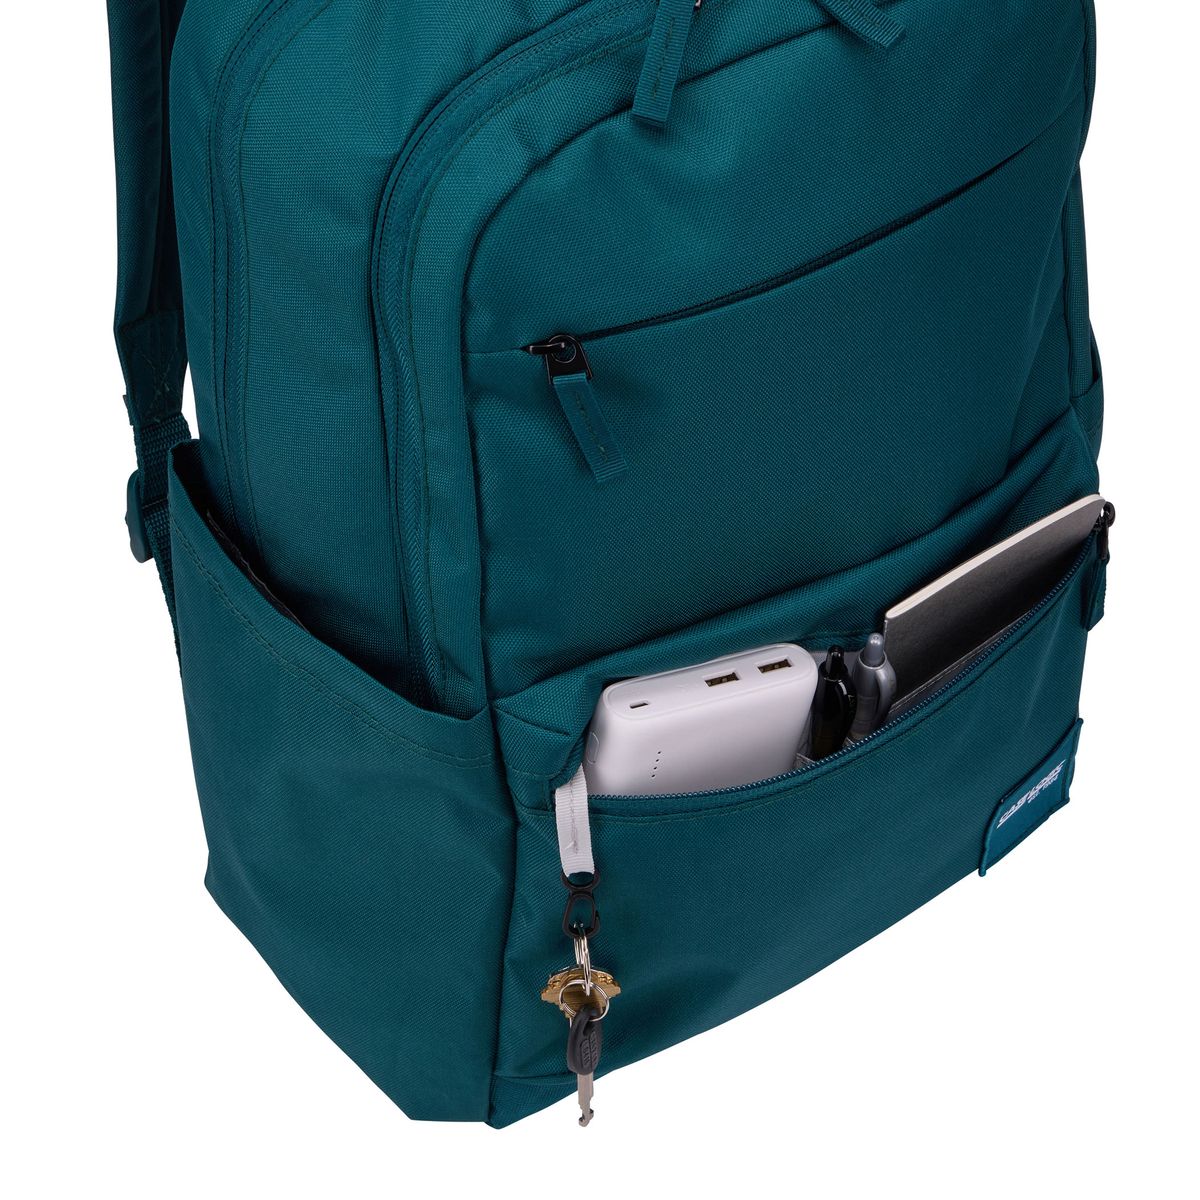 Case Logic Uplink Backpack recycled laptop backpack